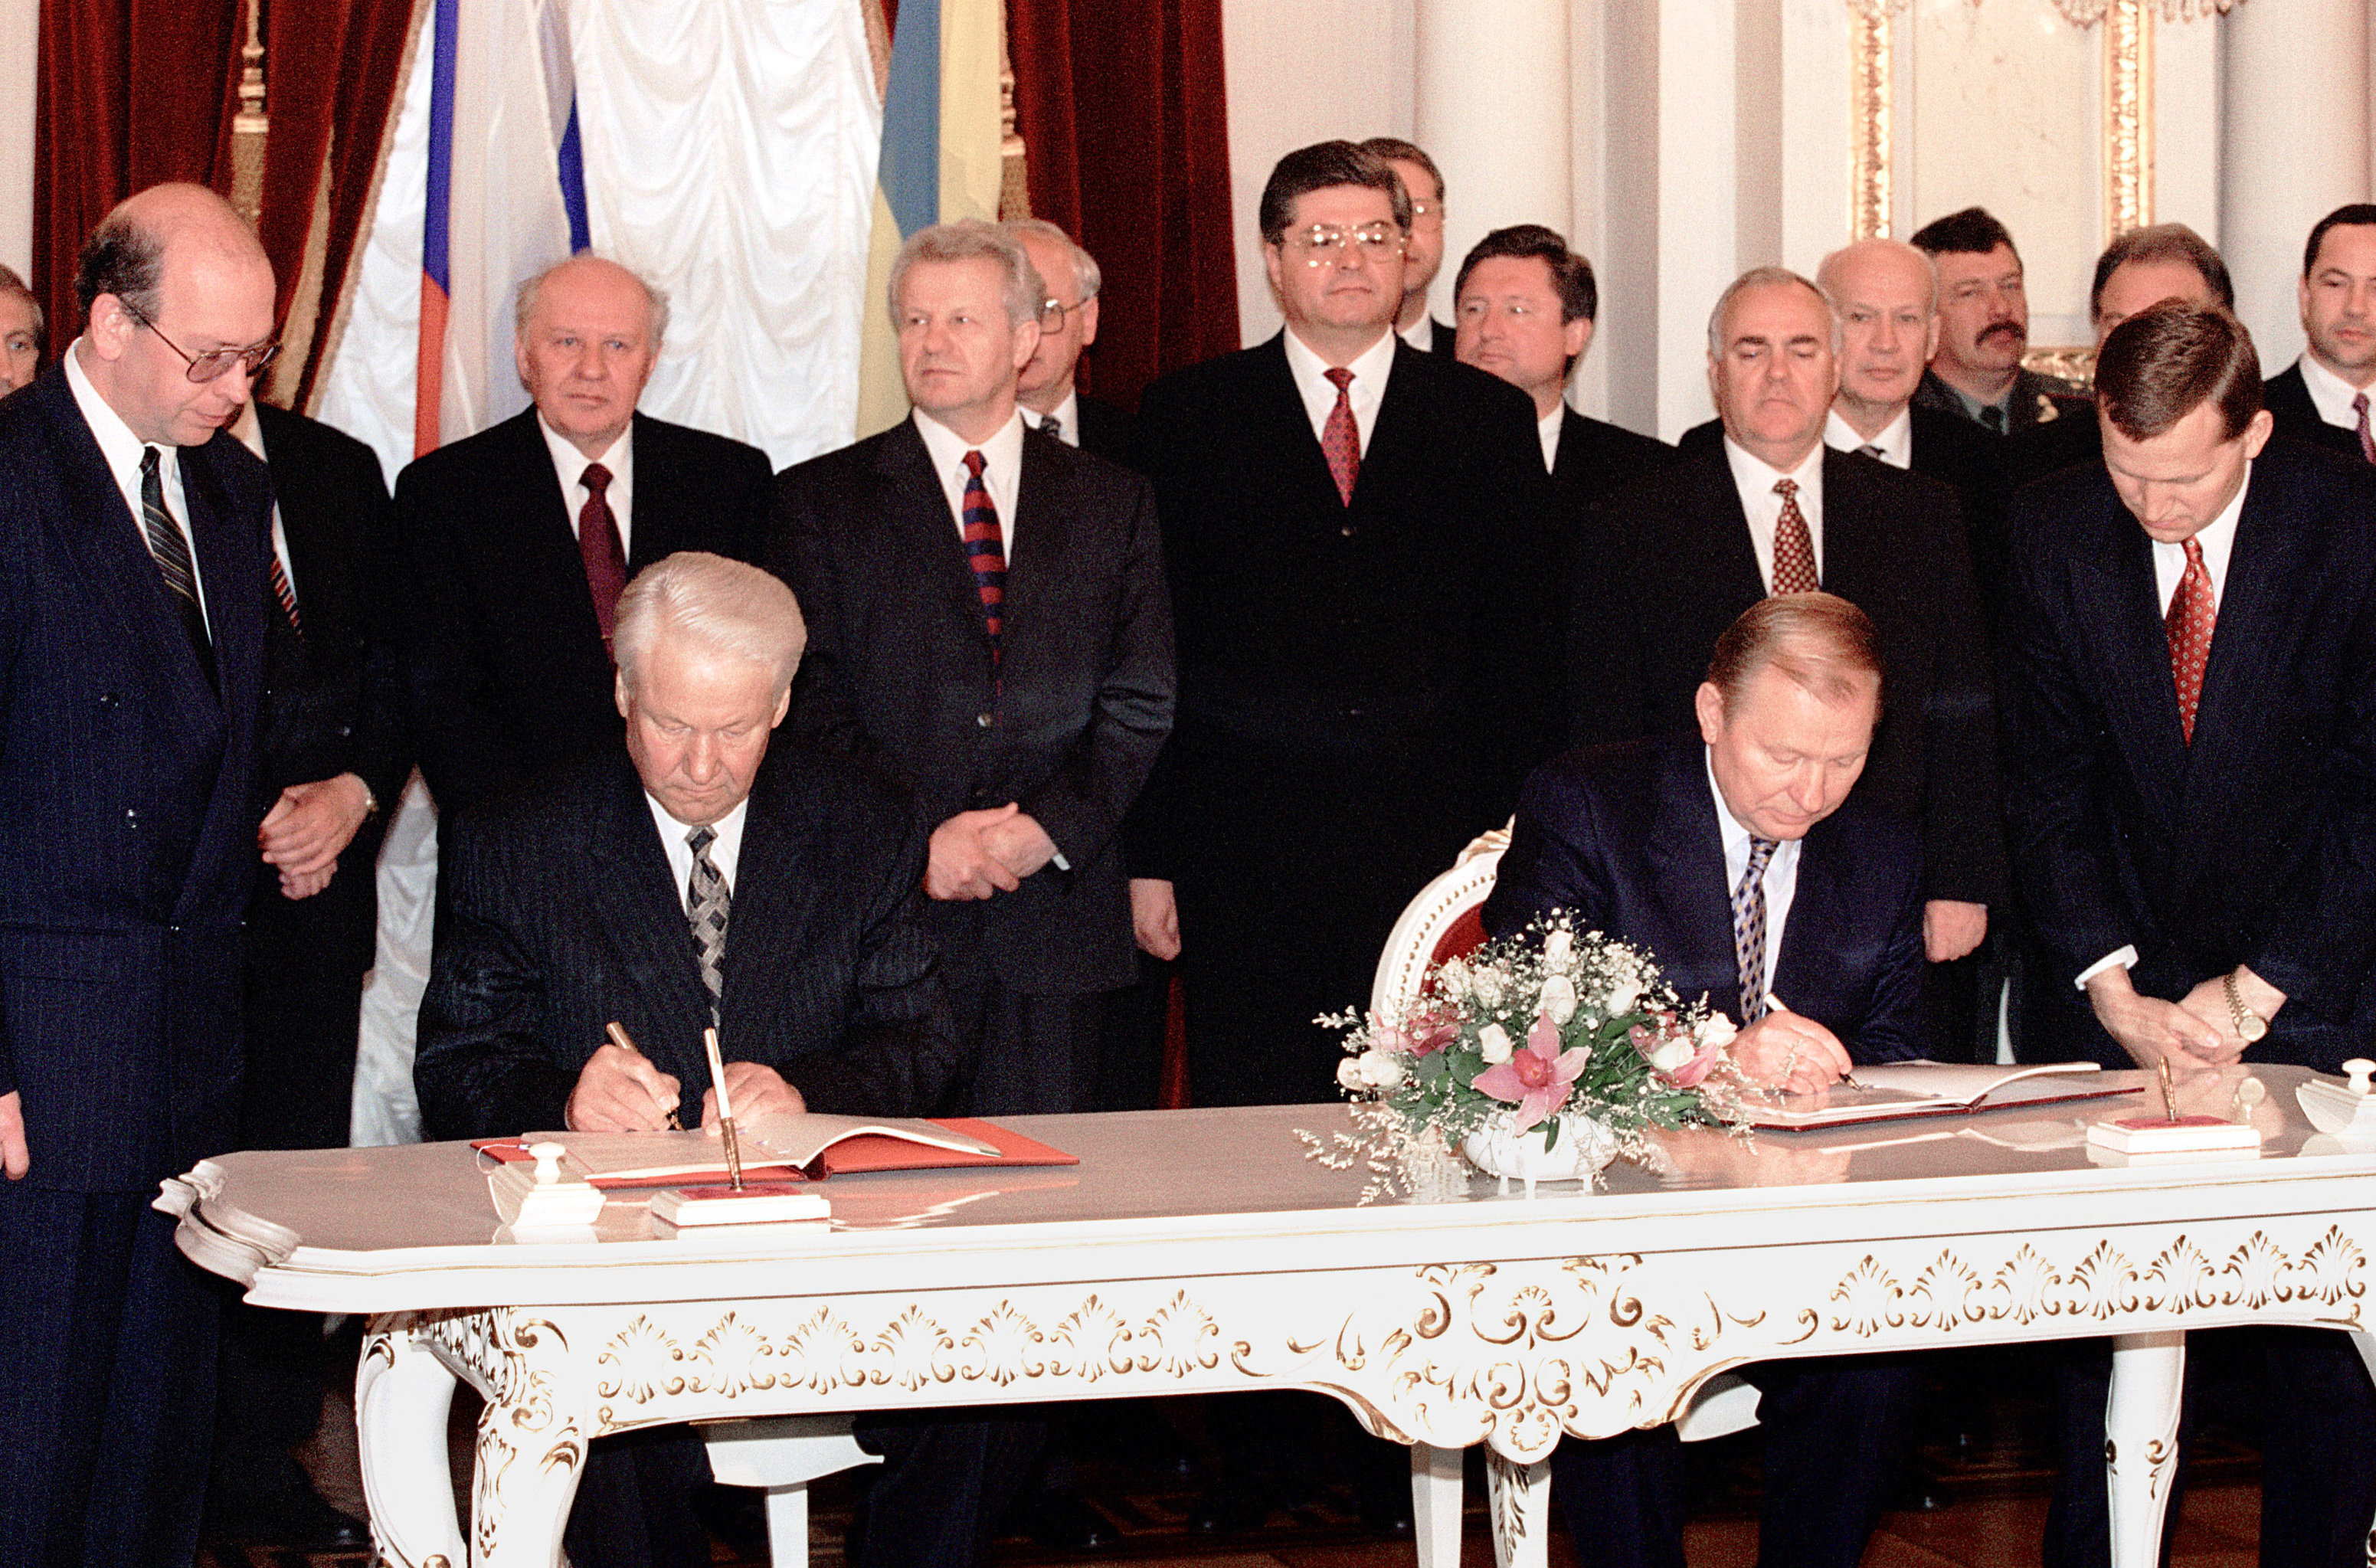 Договор о границах между россией и украиной. Ельцин и Кучма 1997. Ельцин и Кучма 1995.